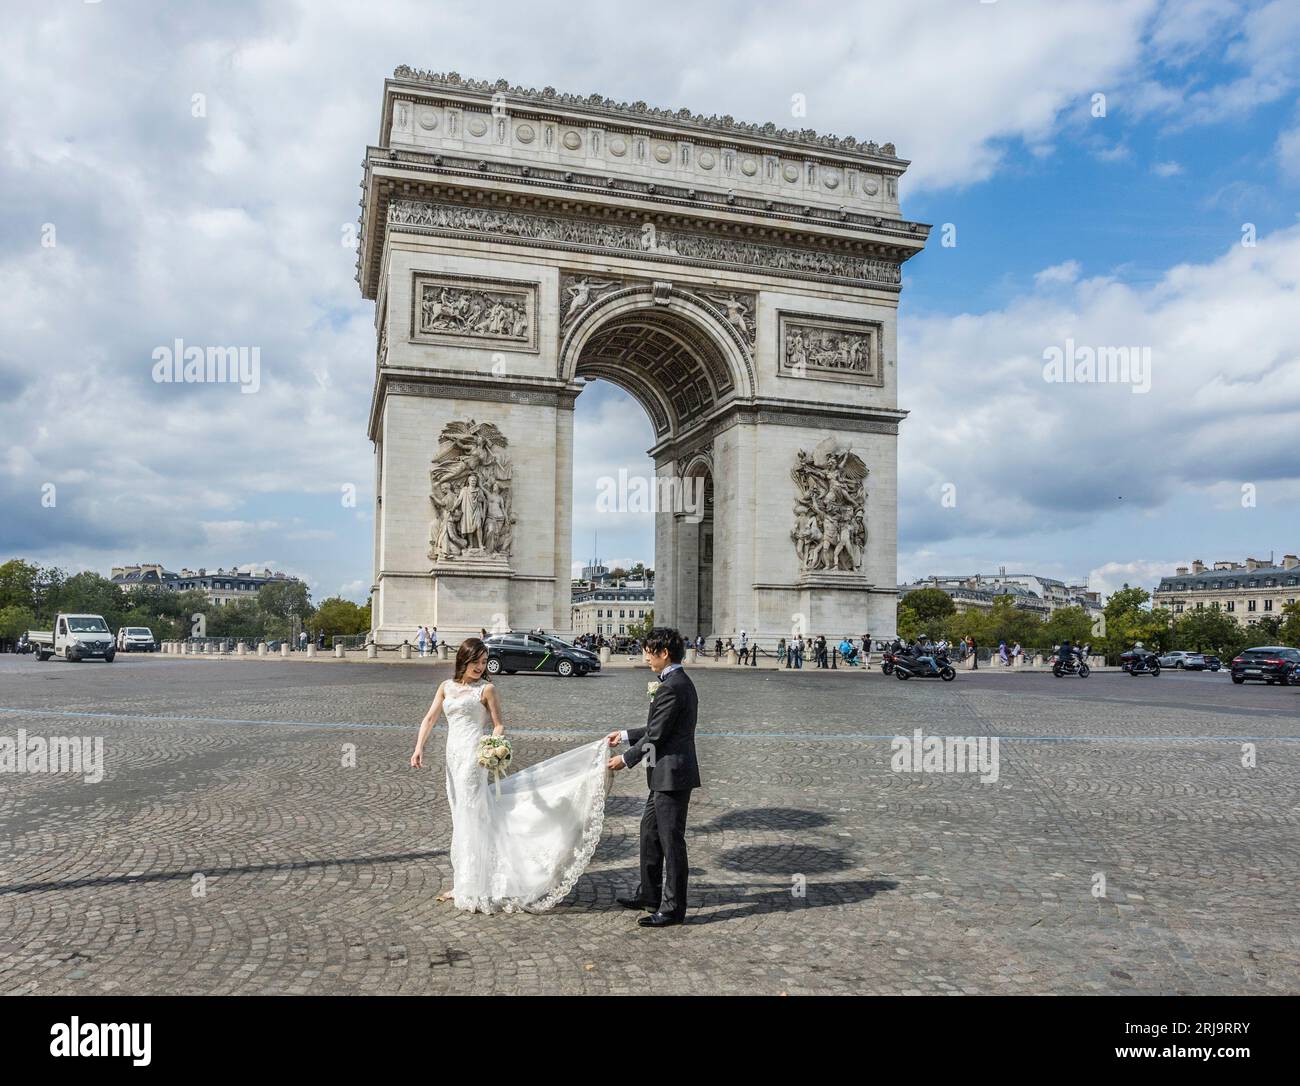 Servizio fotografico di matrimonio a Place Charles de Gaulle, storicamente conosciuta come Place de l'Étoile, il più grande incrocio stradale di Parigi, punto d'incontro di dodici A. Foto Stock